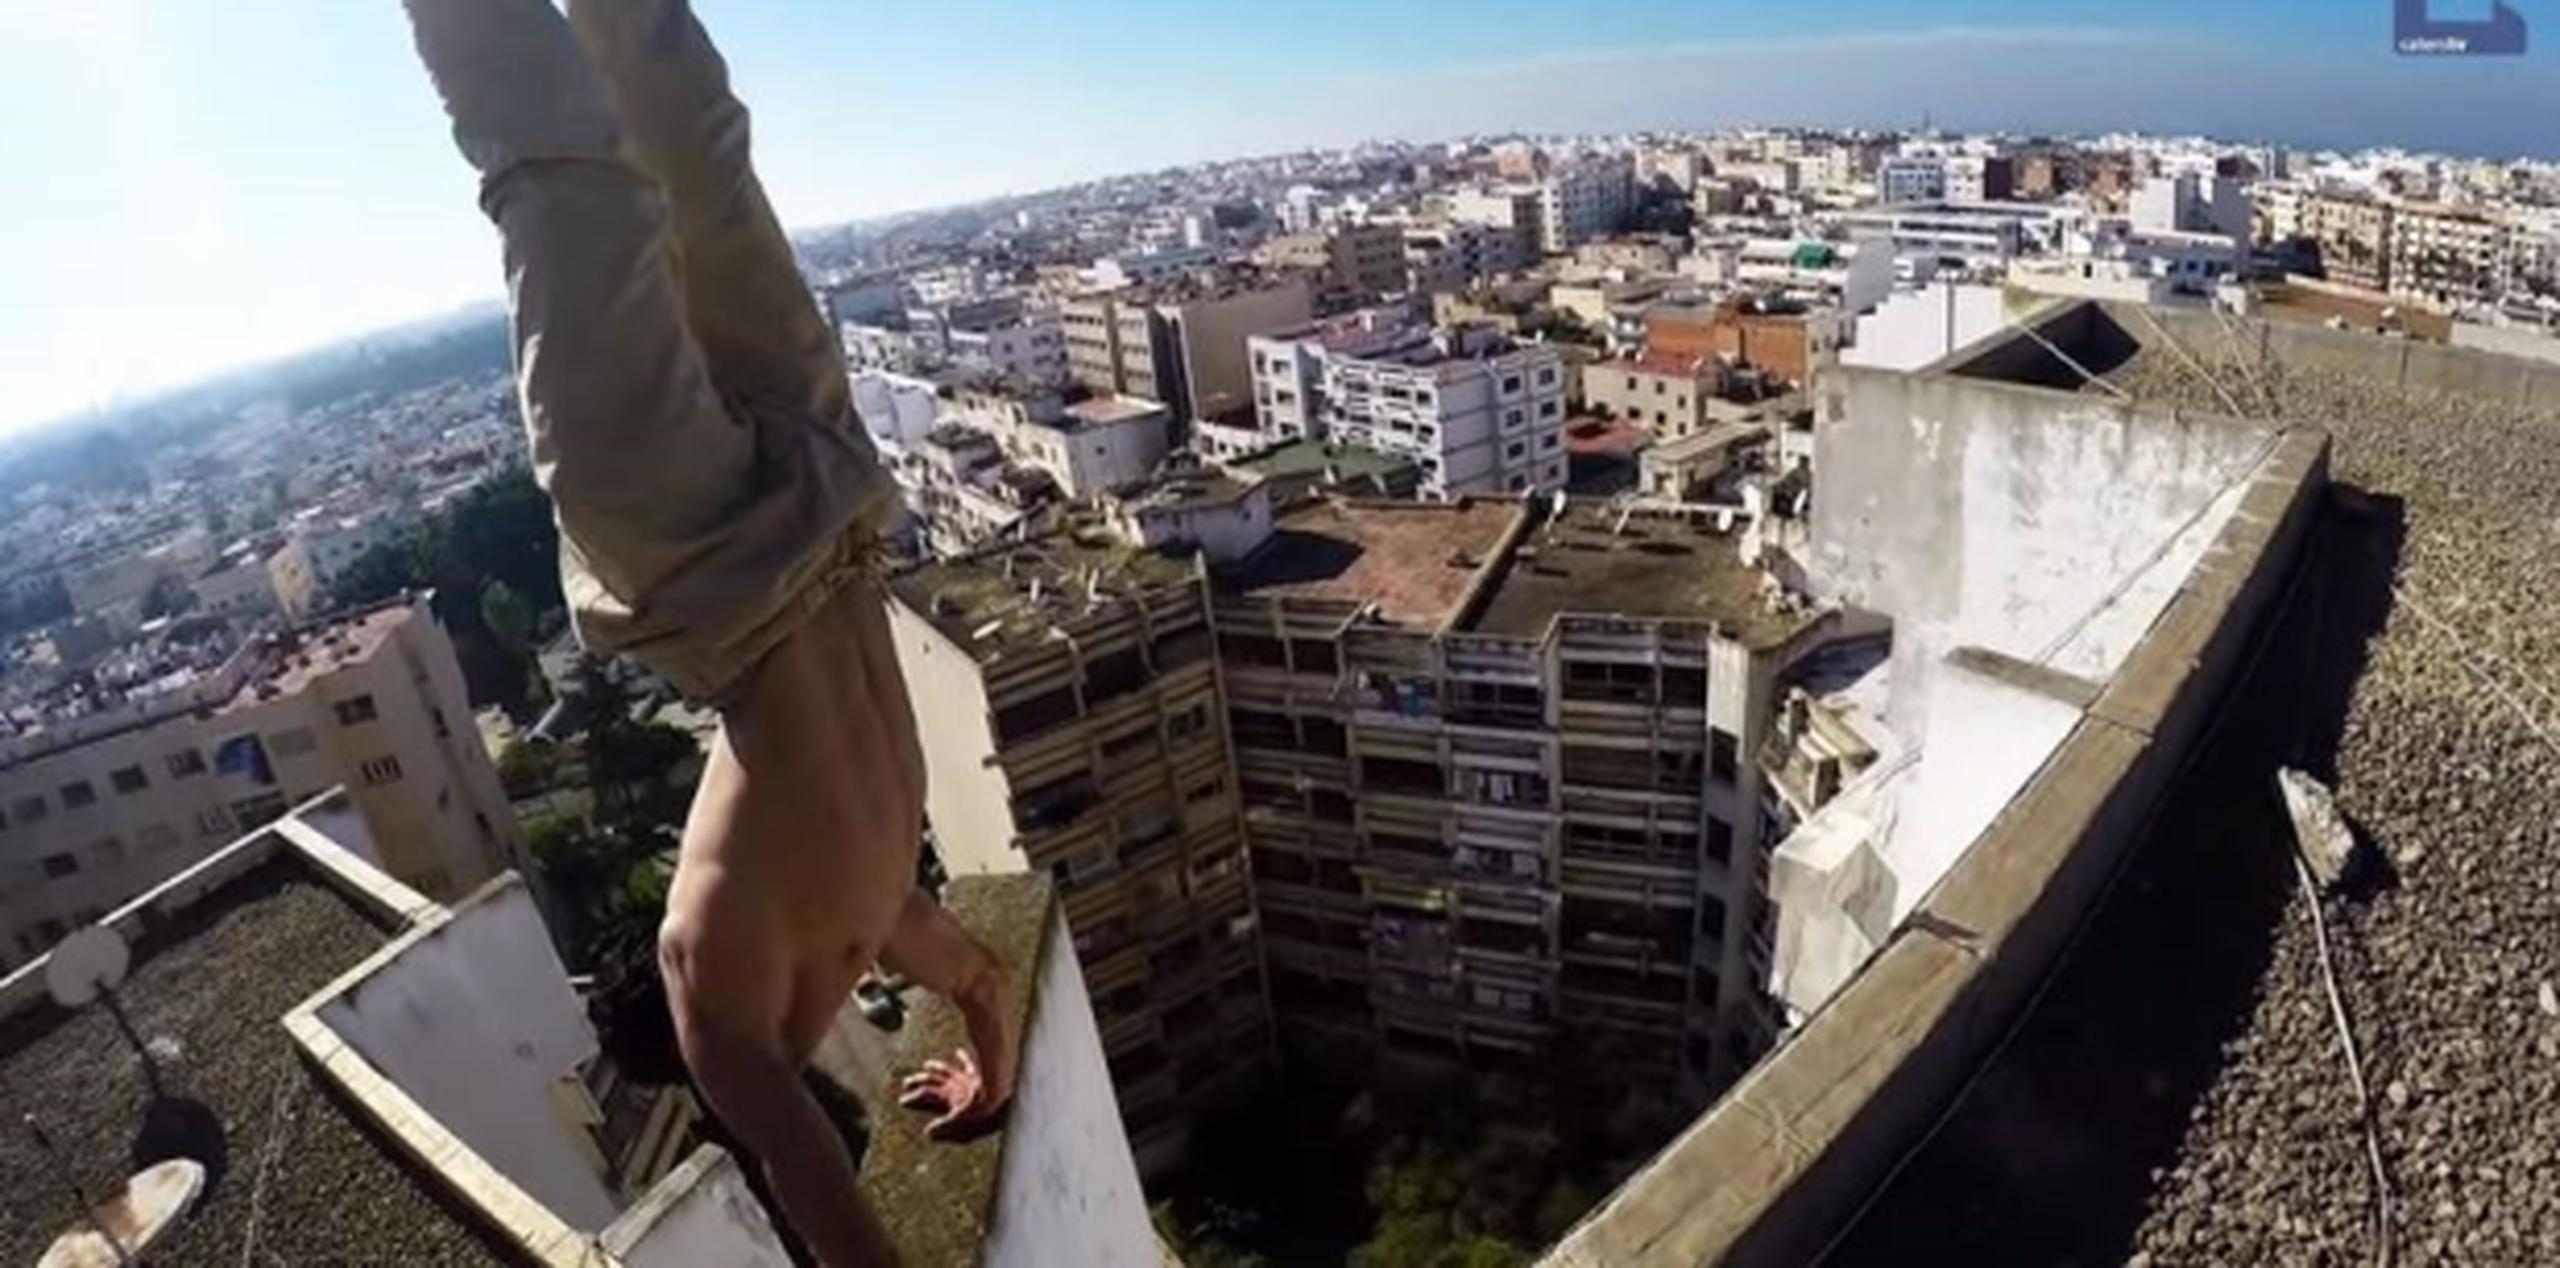 En el video de YouTube, se aprecia que Tenni no le tiene miedo a las alturas, pues realiza ejercicios y acrobacias en los techos de las casas de su ciudad. (Youtube)